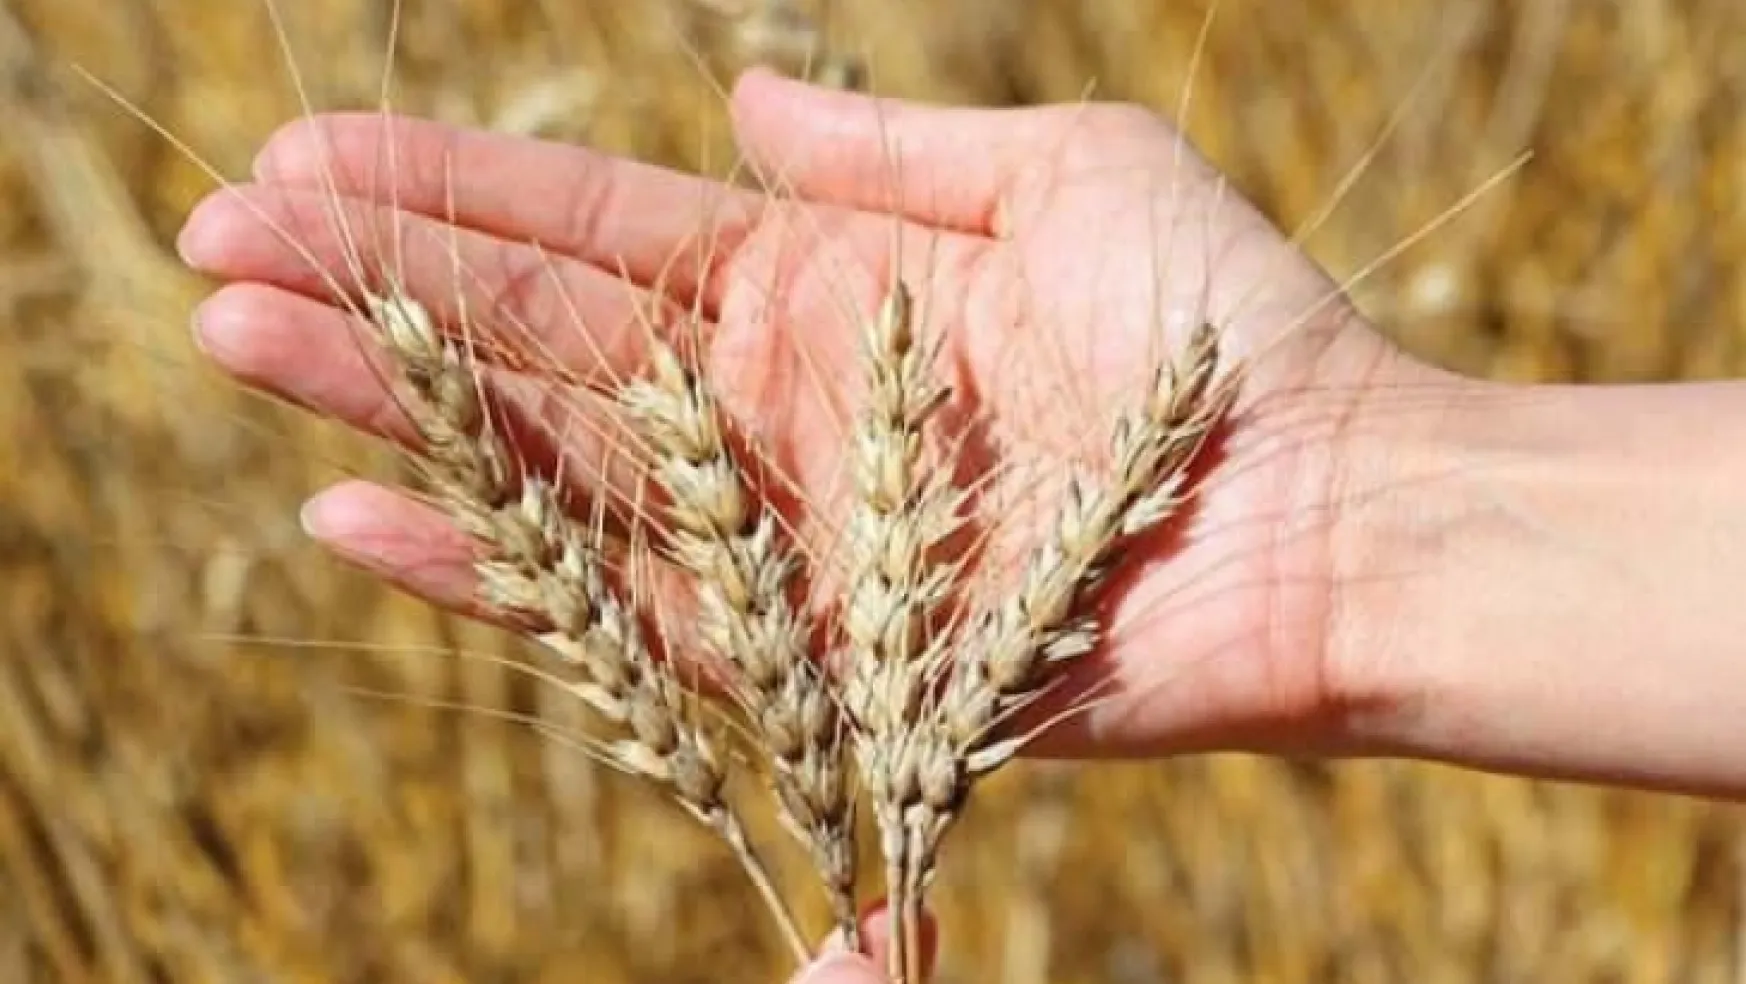 Türkiye'nin buğday arzında sıkıntı beklenmiyor